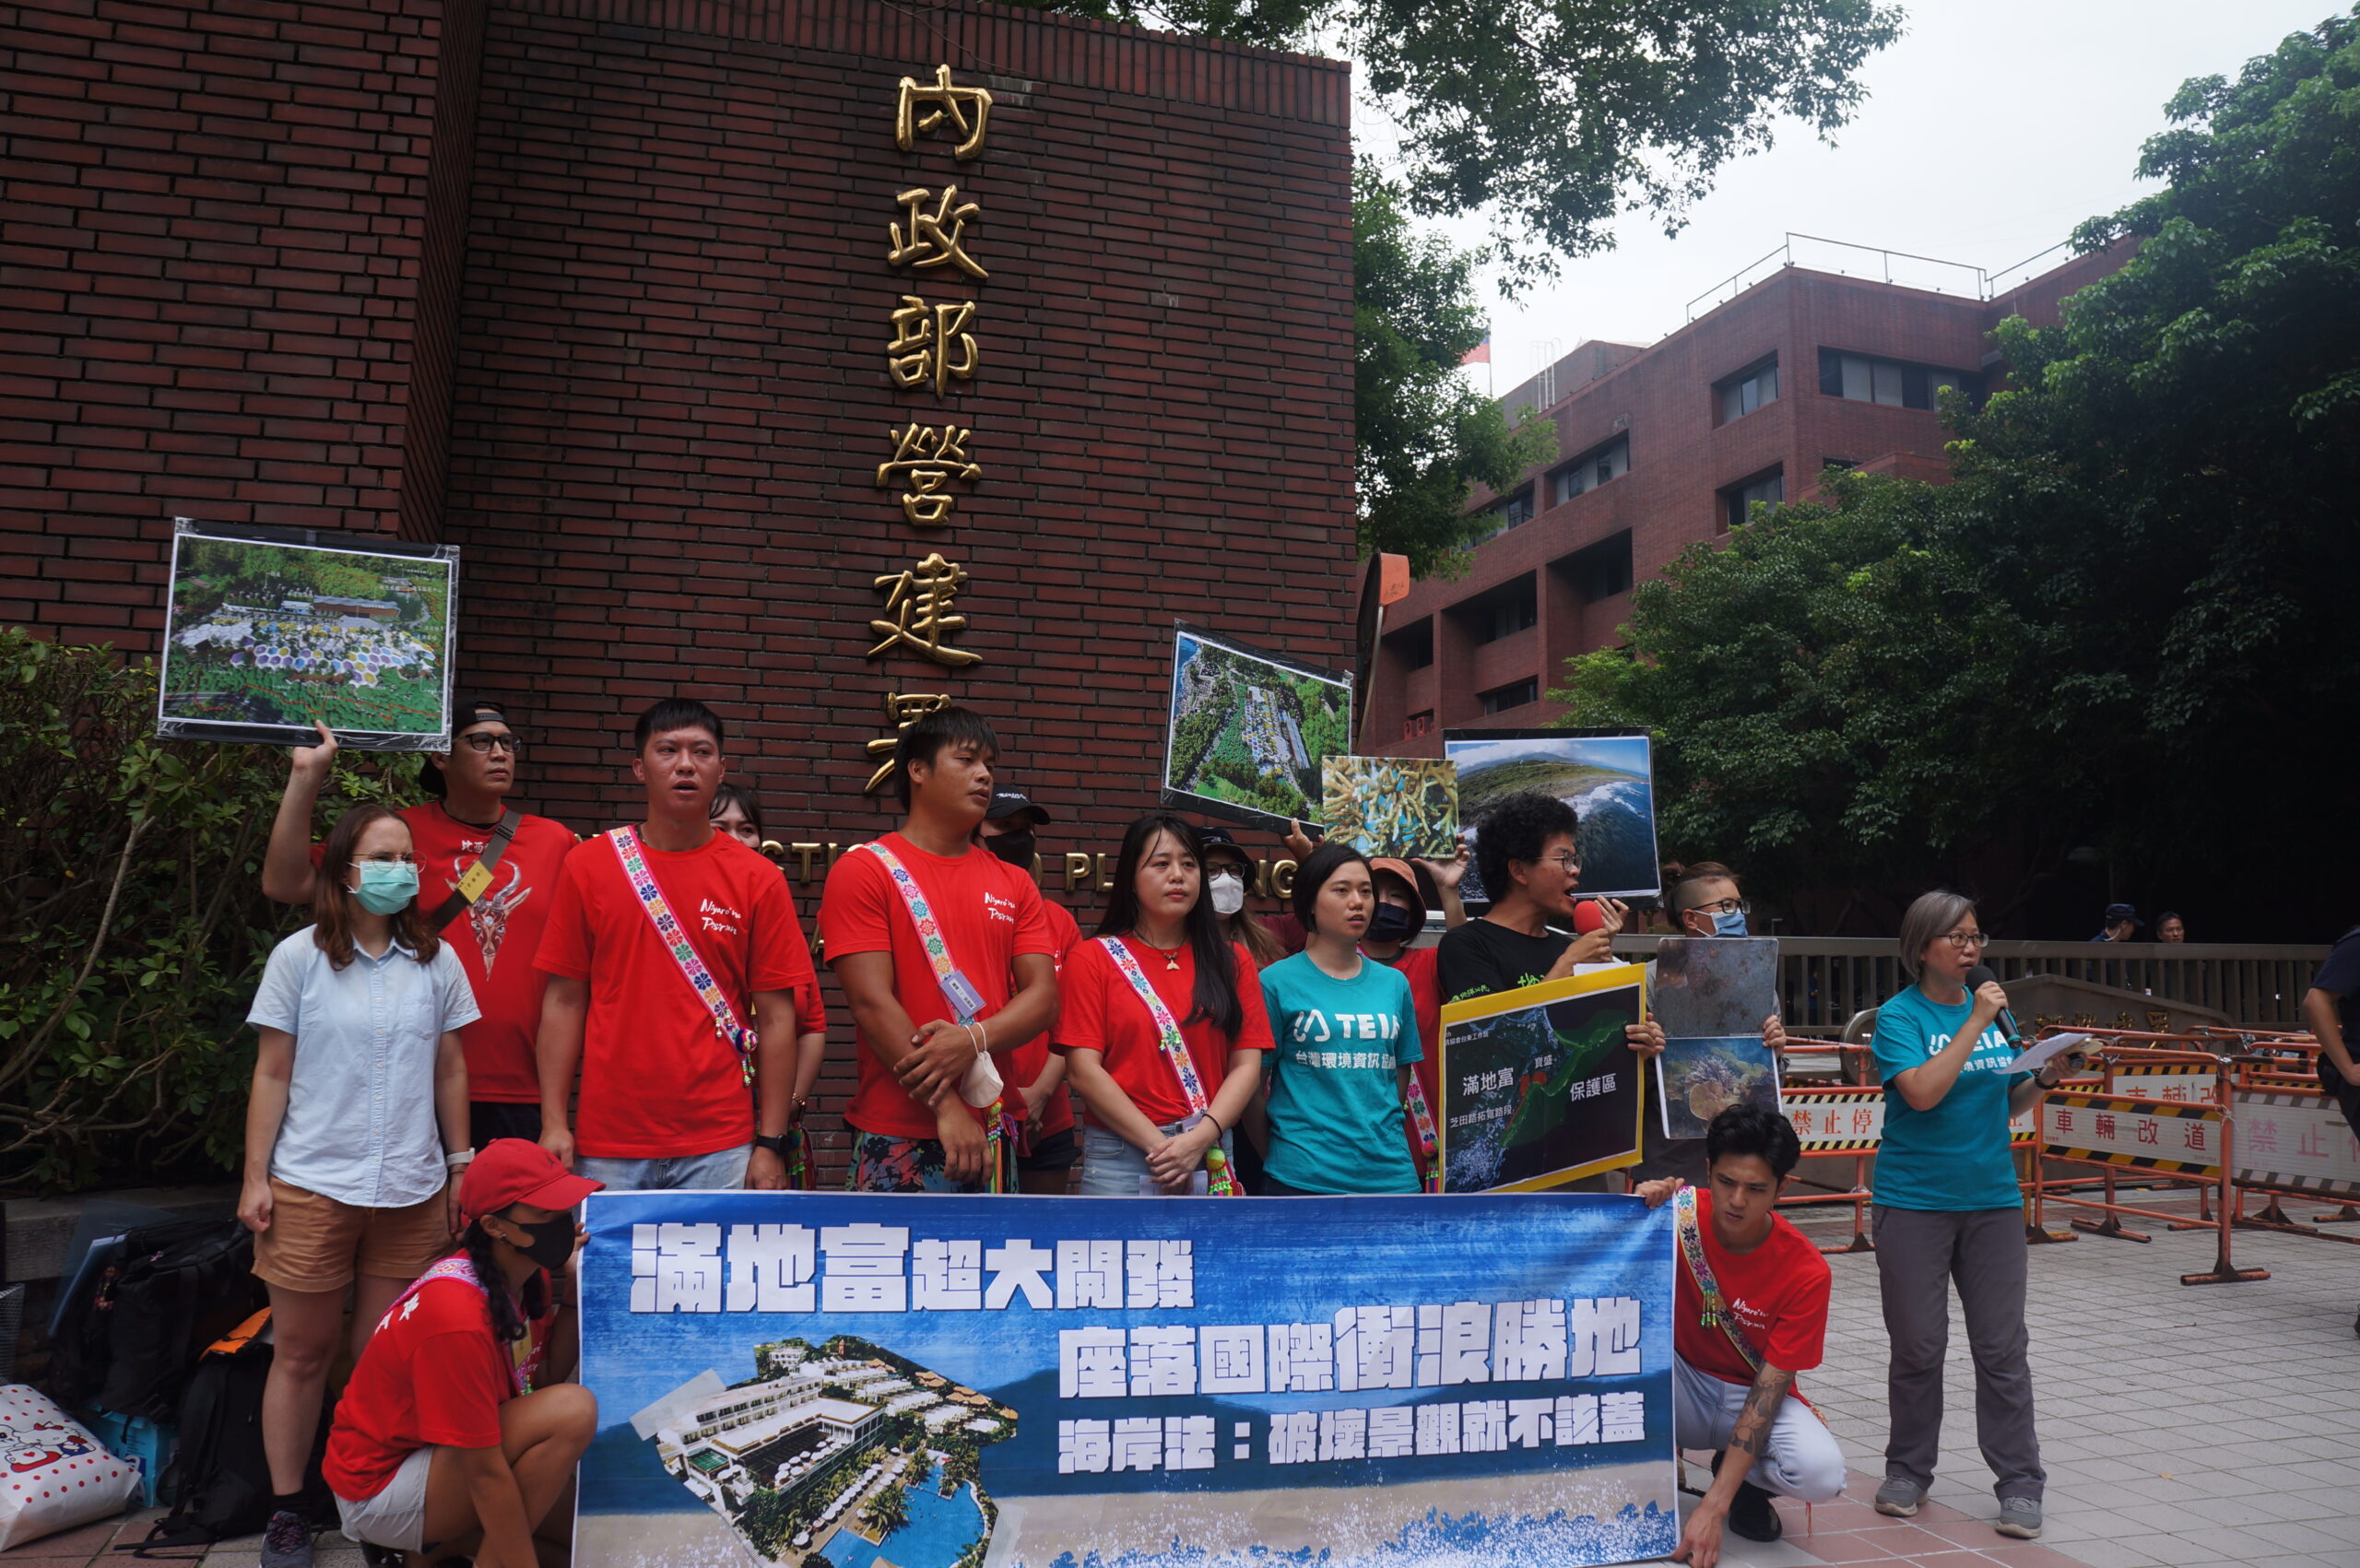 滿地富開發案抗議直播現場_1_台灣環境資訊協會提供